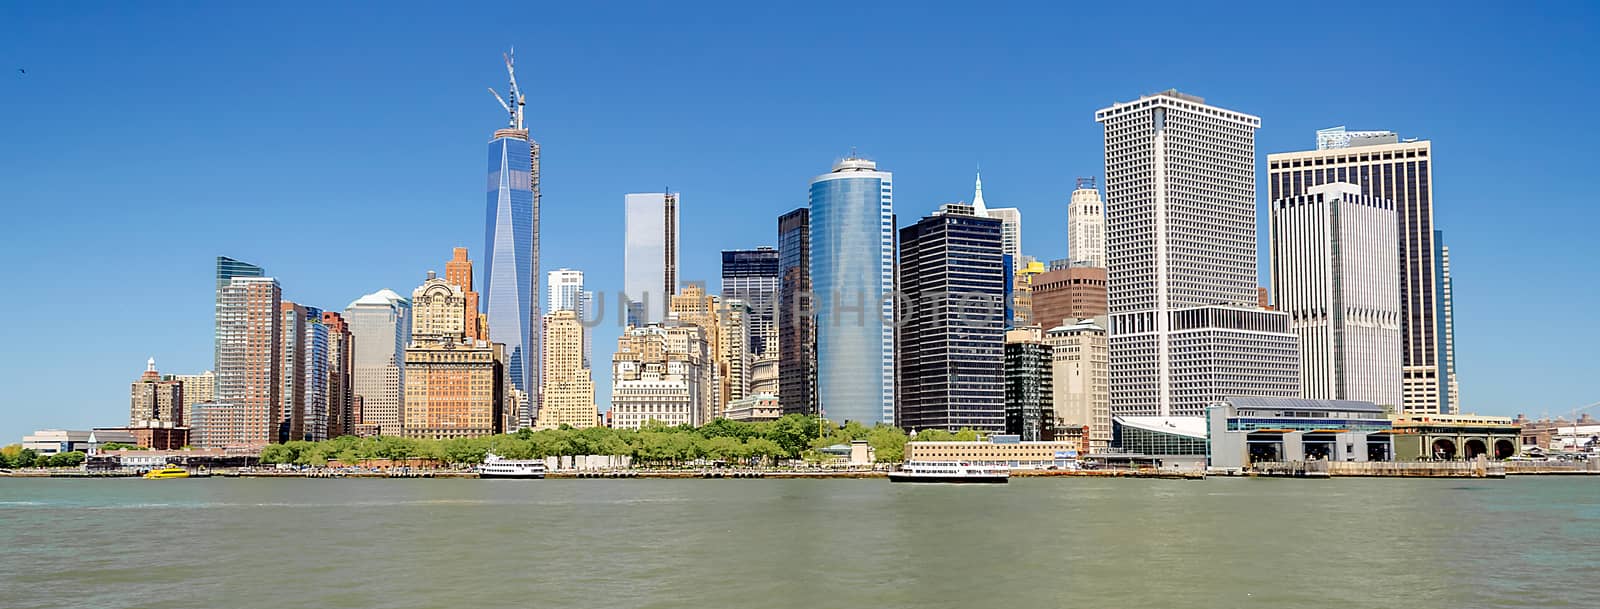 Manhattan skyline, New York City, USA by marcorubino